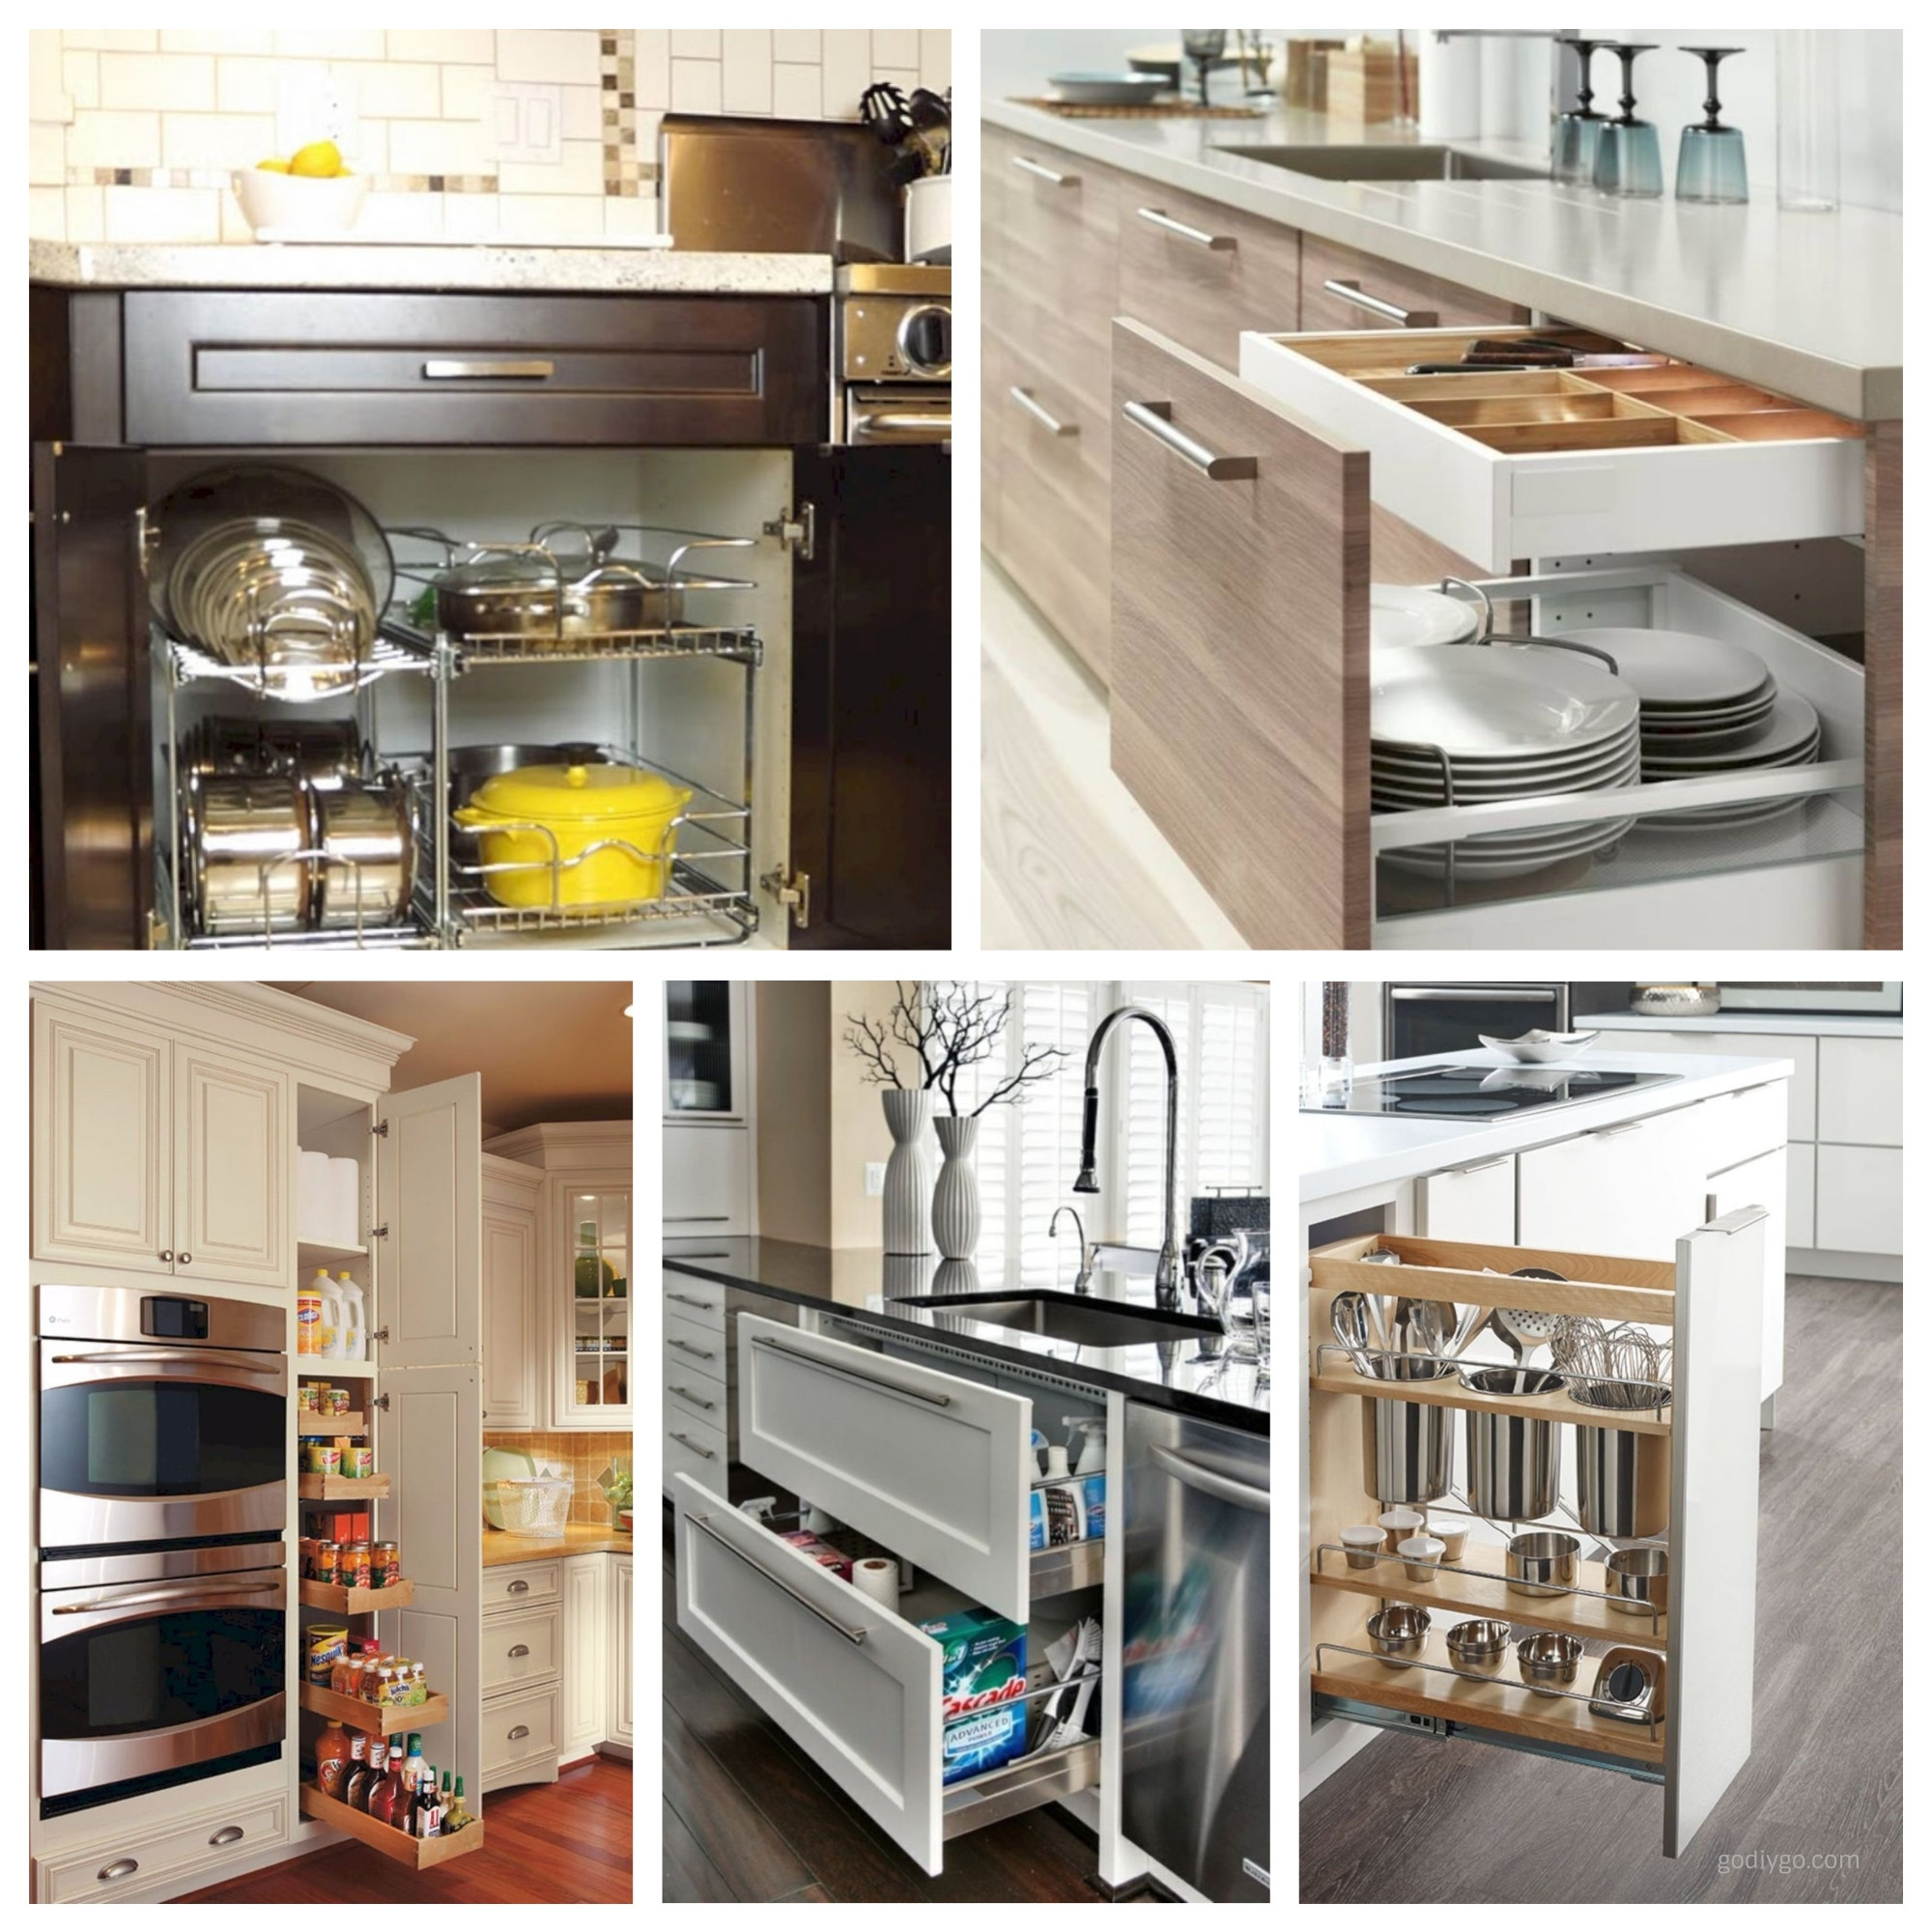 Kitchen Cabinet Organization Tips
 44 Smart Kitchen Cabinet Organization Ideas GODIYGO